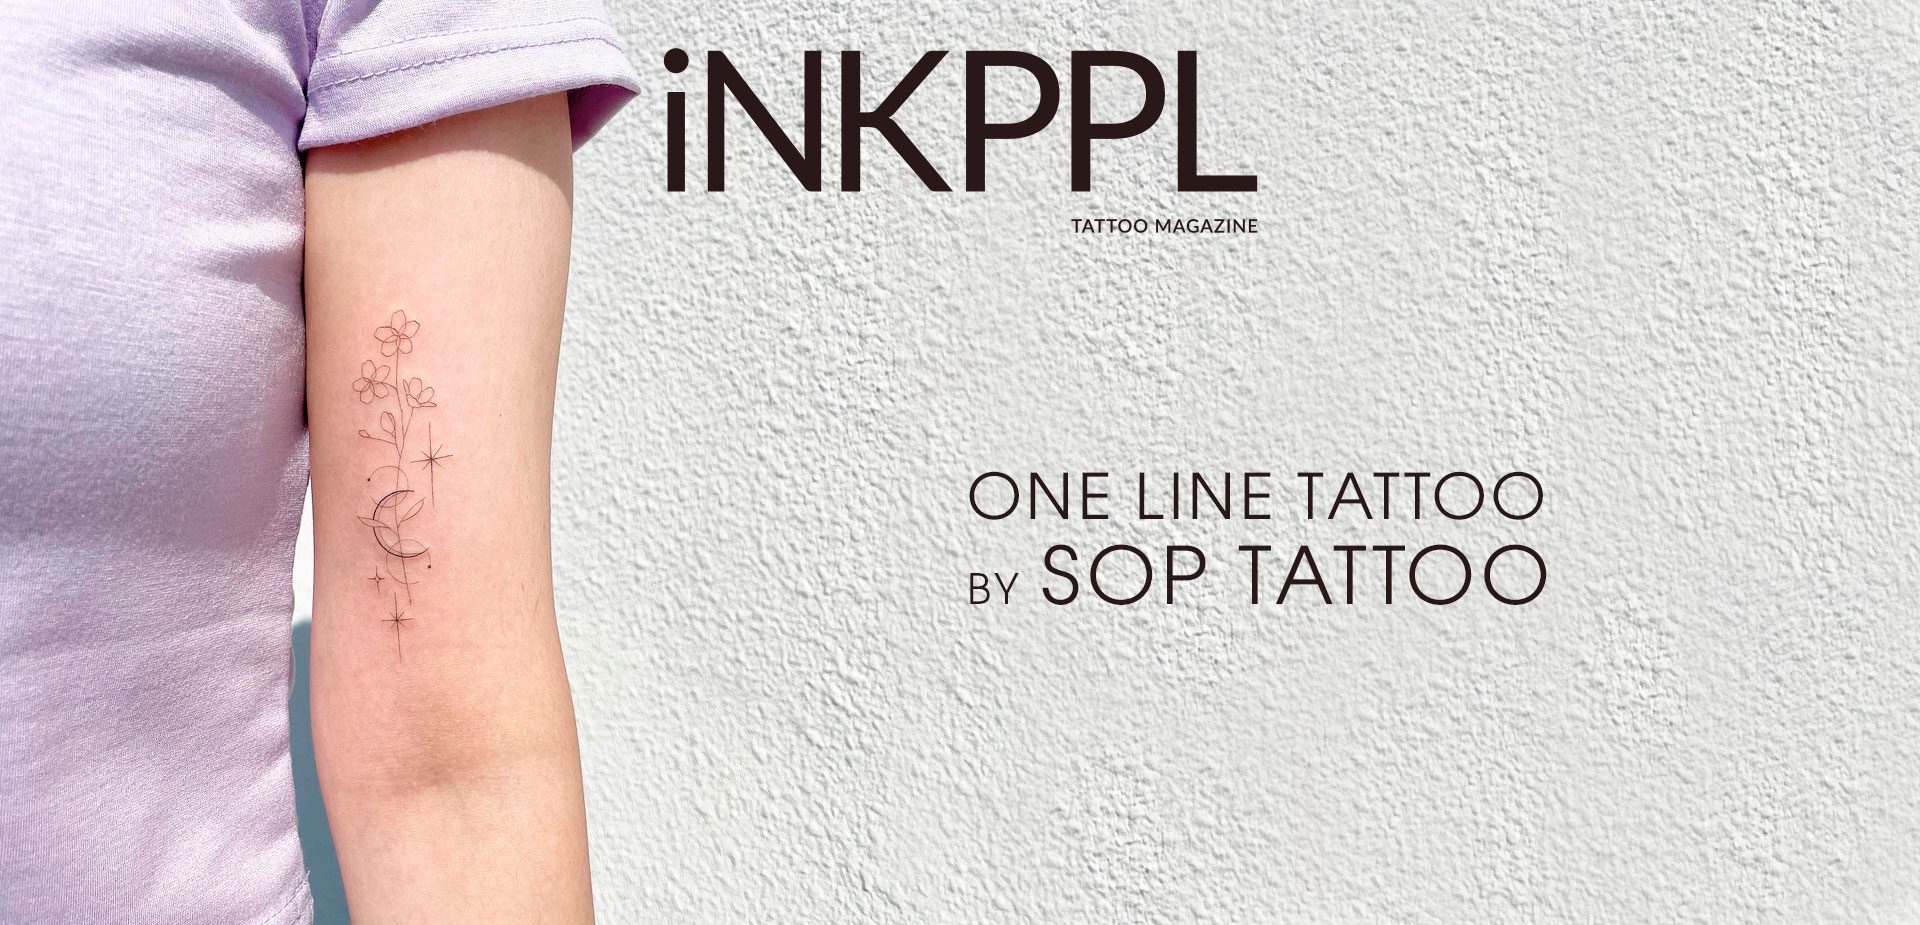 One line tattoo by Sop Tattoo | iNKPPL